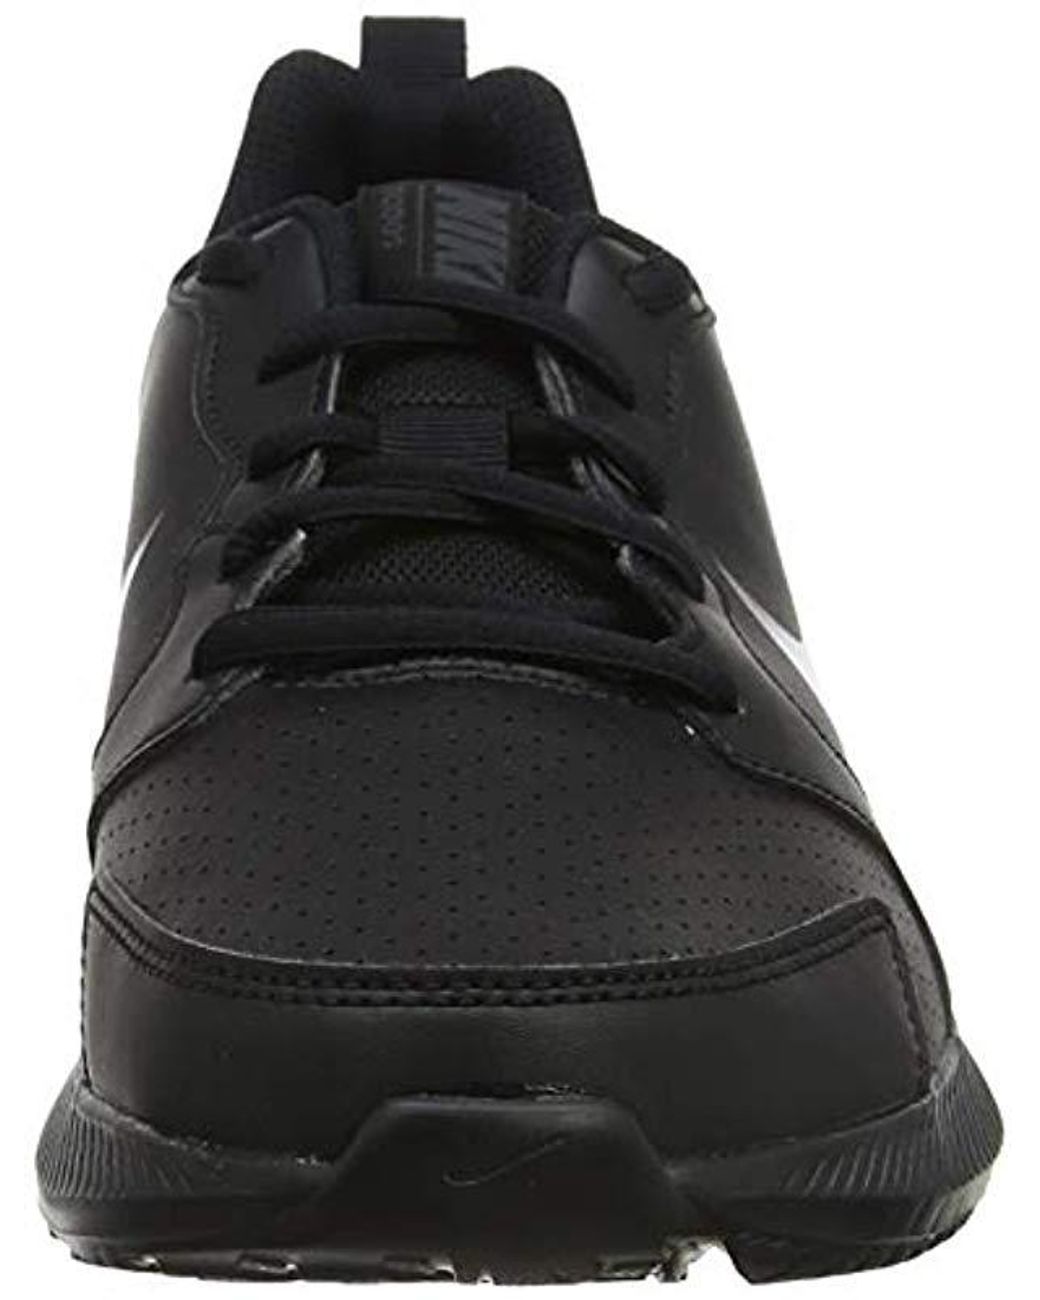 Nike Todos Rn Shoe in Black | Lyst